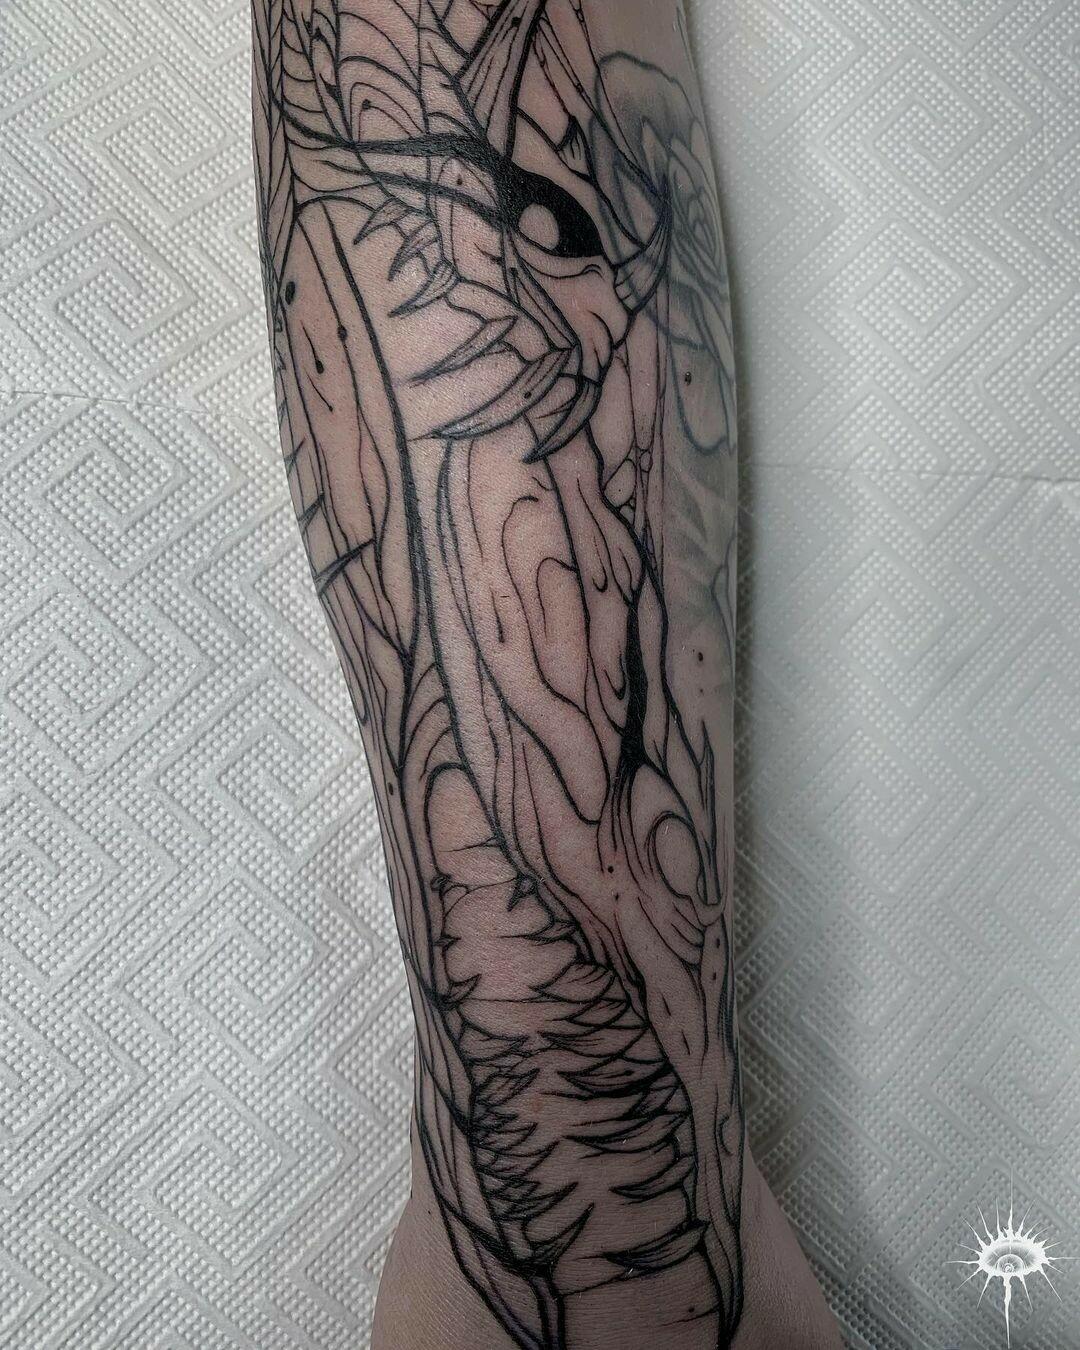 Inksearch tattoo Moszkowski Tattoo